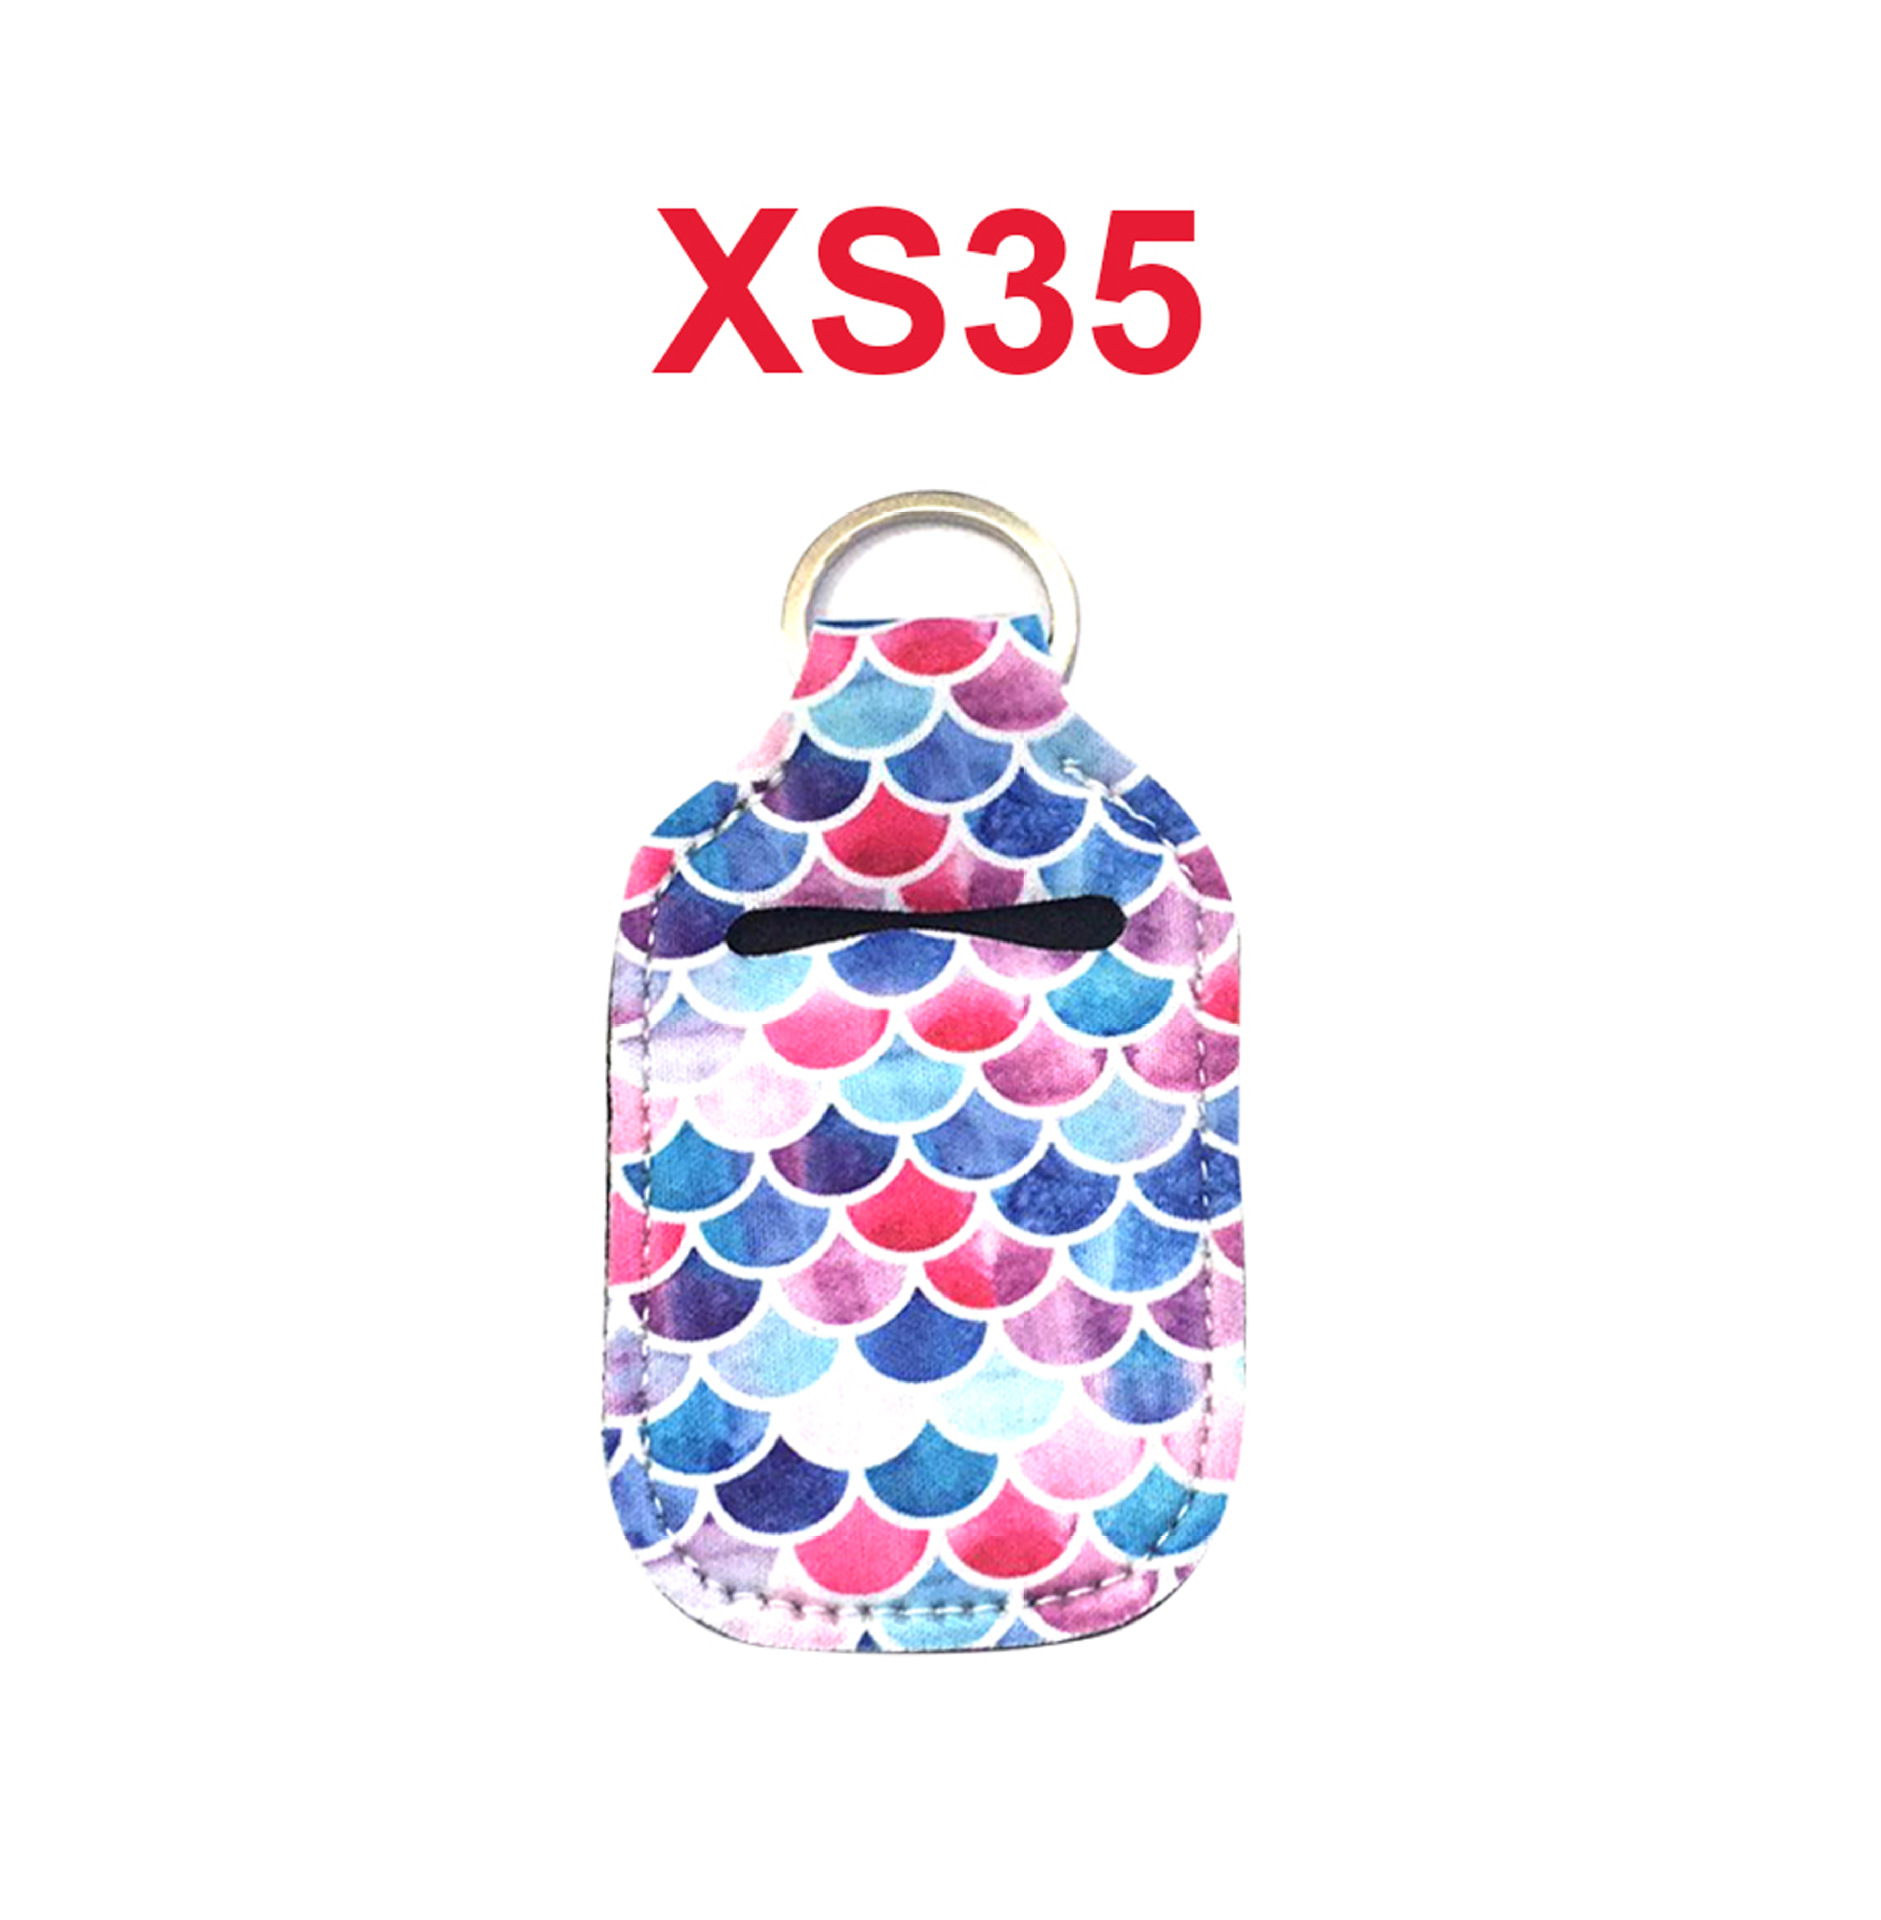 XS35